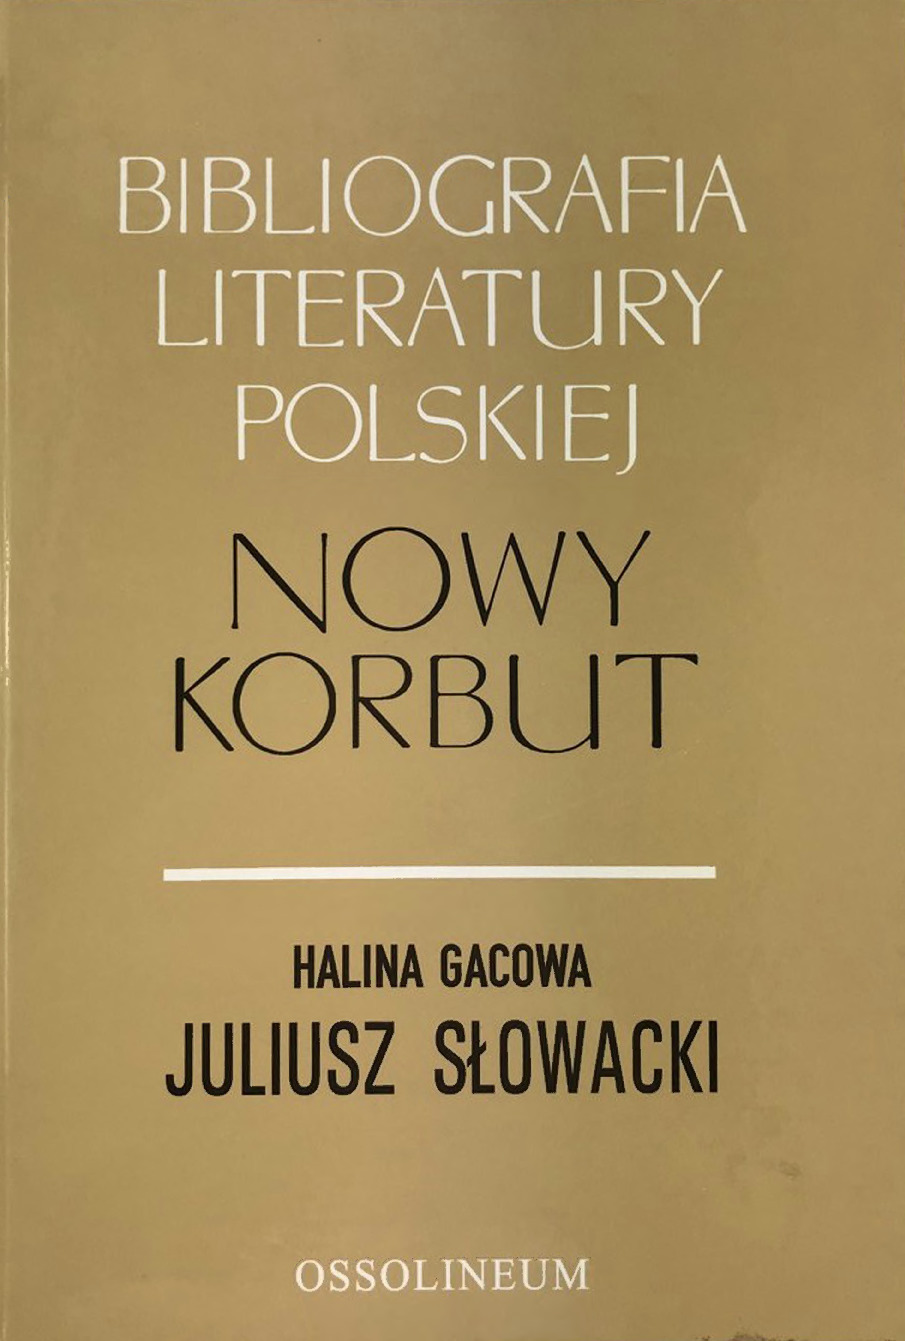 Bibliografia Literatury Polskiej Nowy Korbut : Juliusz Słowacki